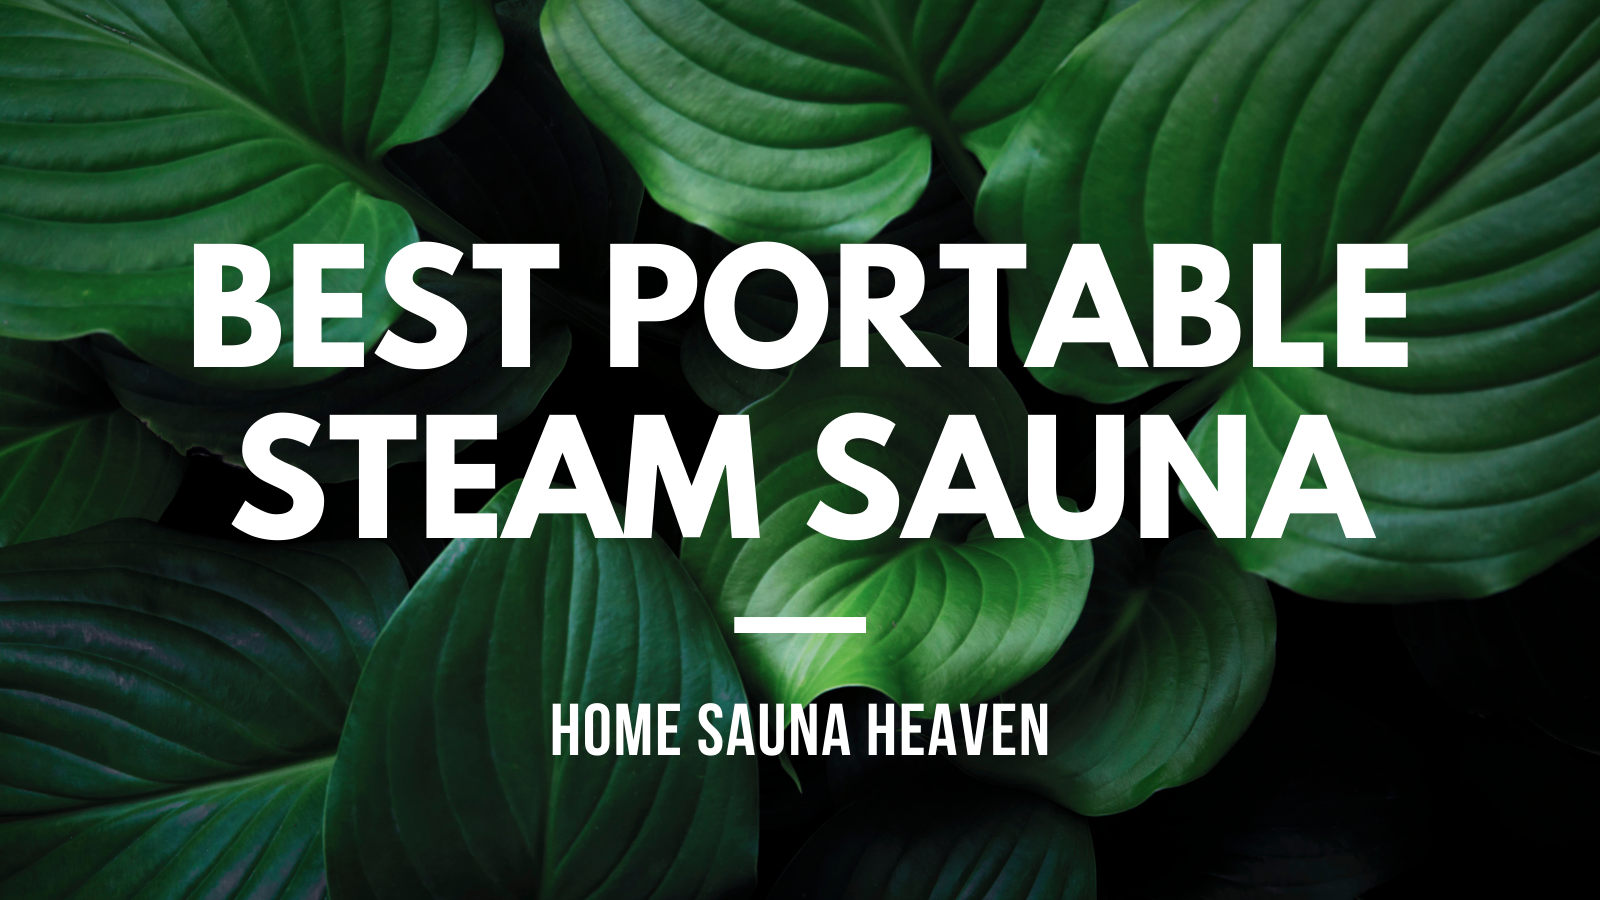 Best Portable Steam Sauna